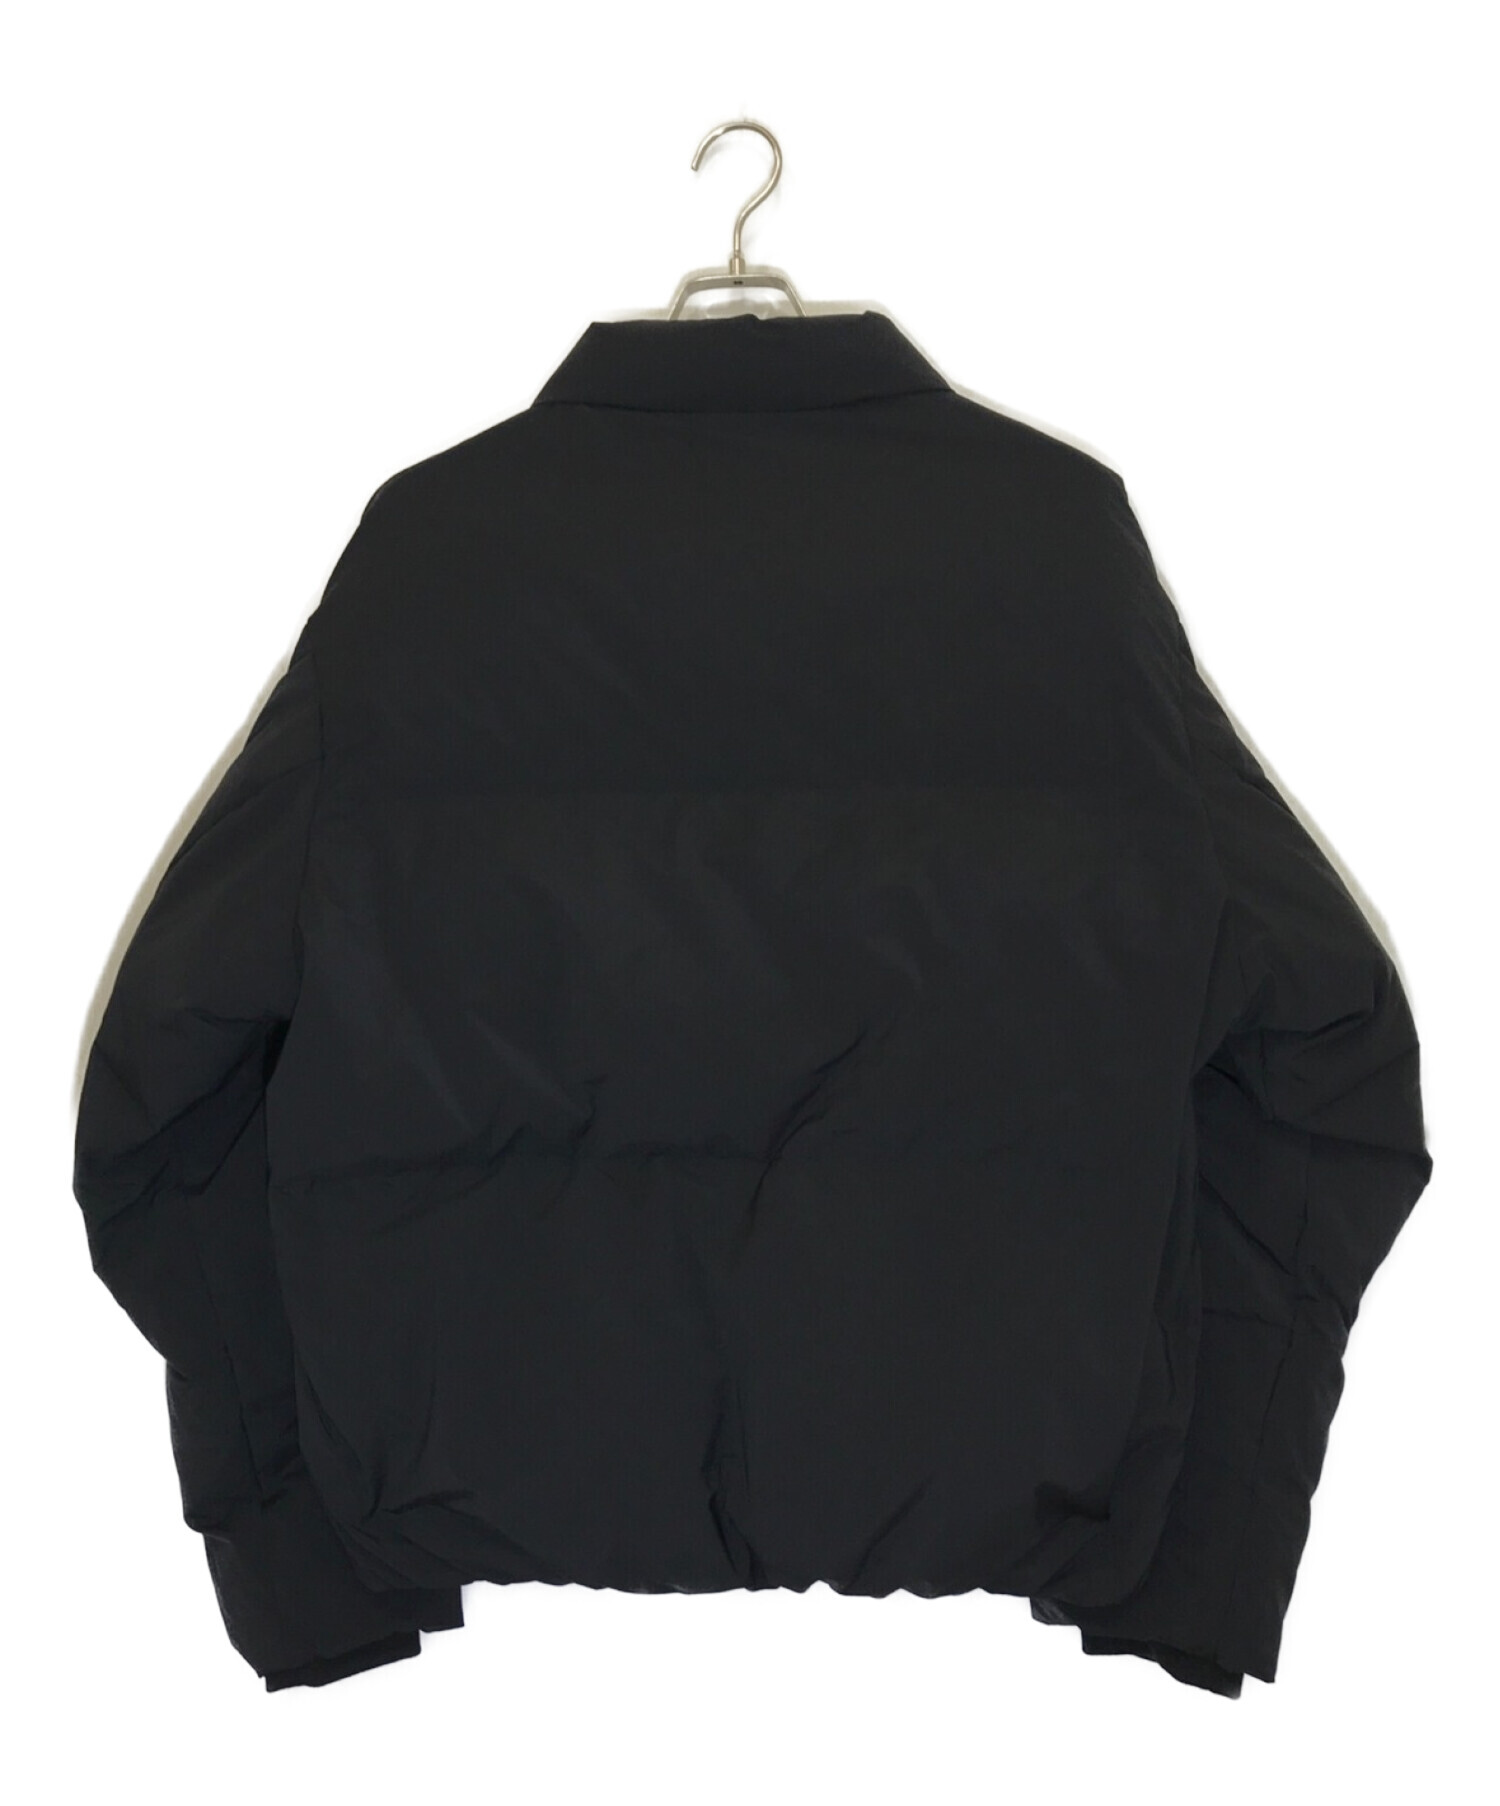 RUUBON (ルーボン) padded volume ecodown jacket ブラック サイズ:M